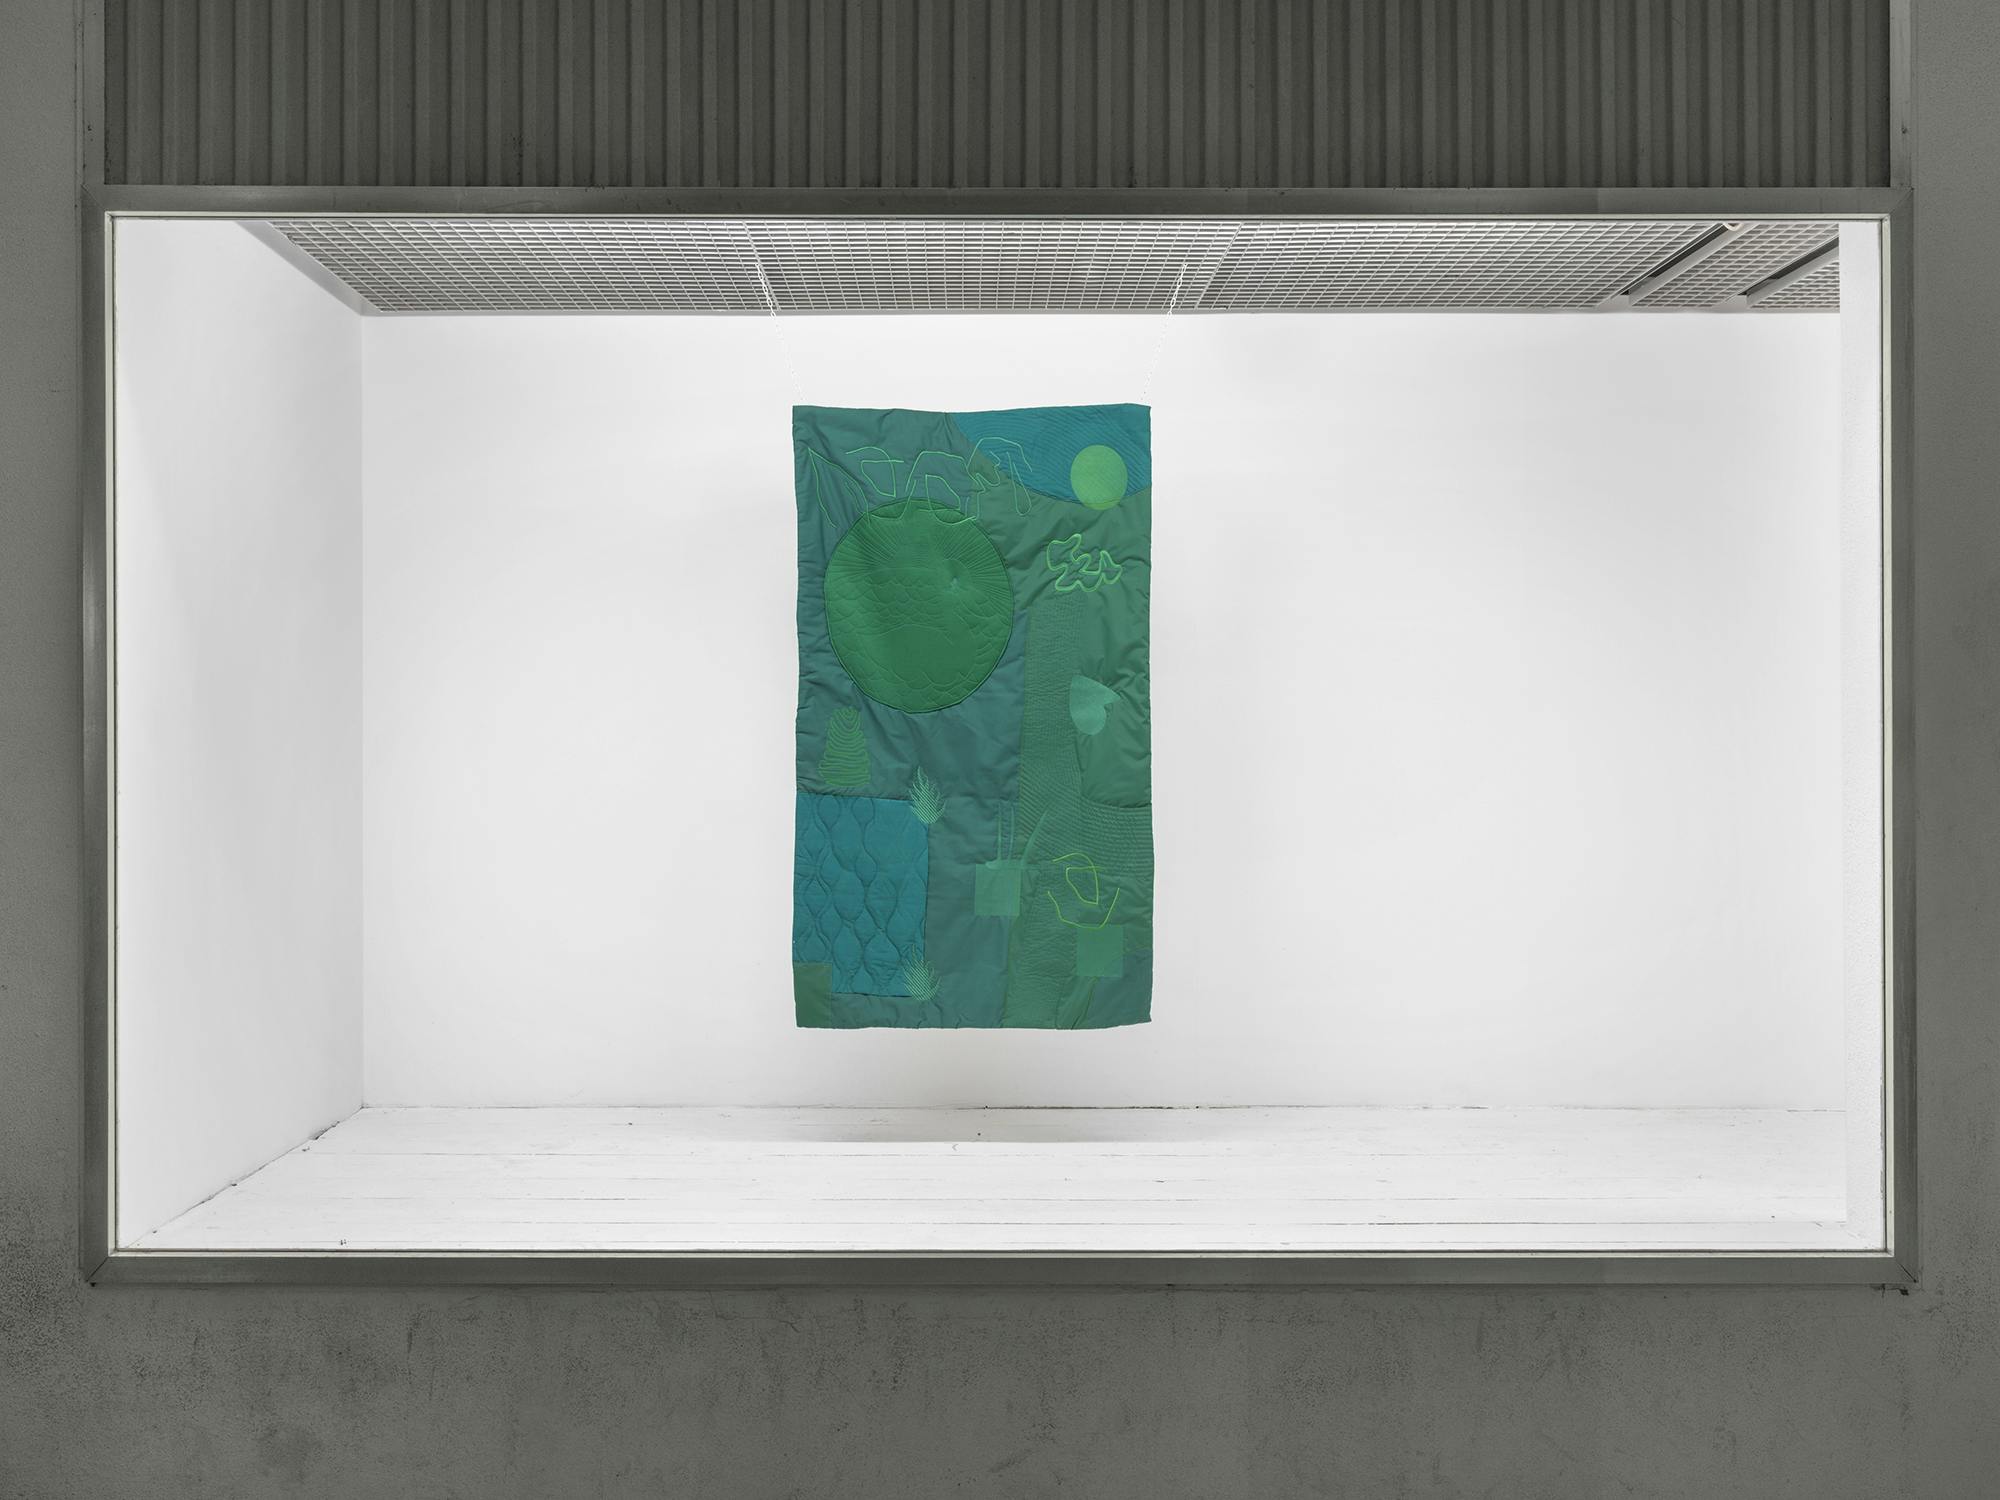 Gabbiano (green), Textile collage 145x88cm, 2021